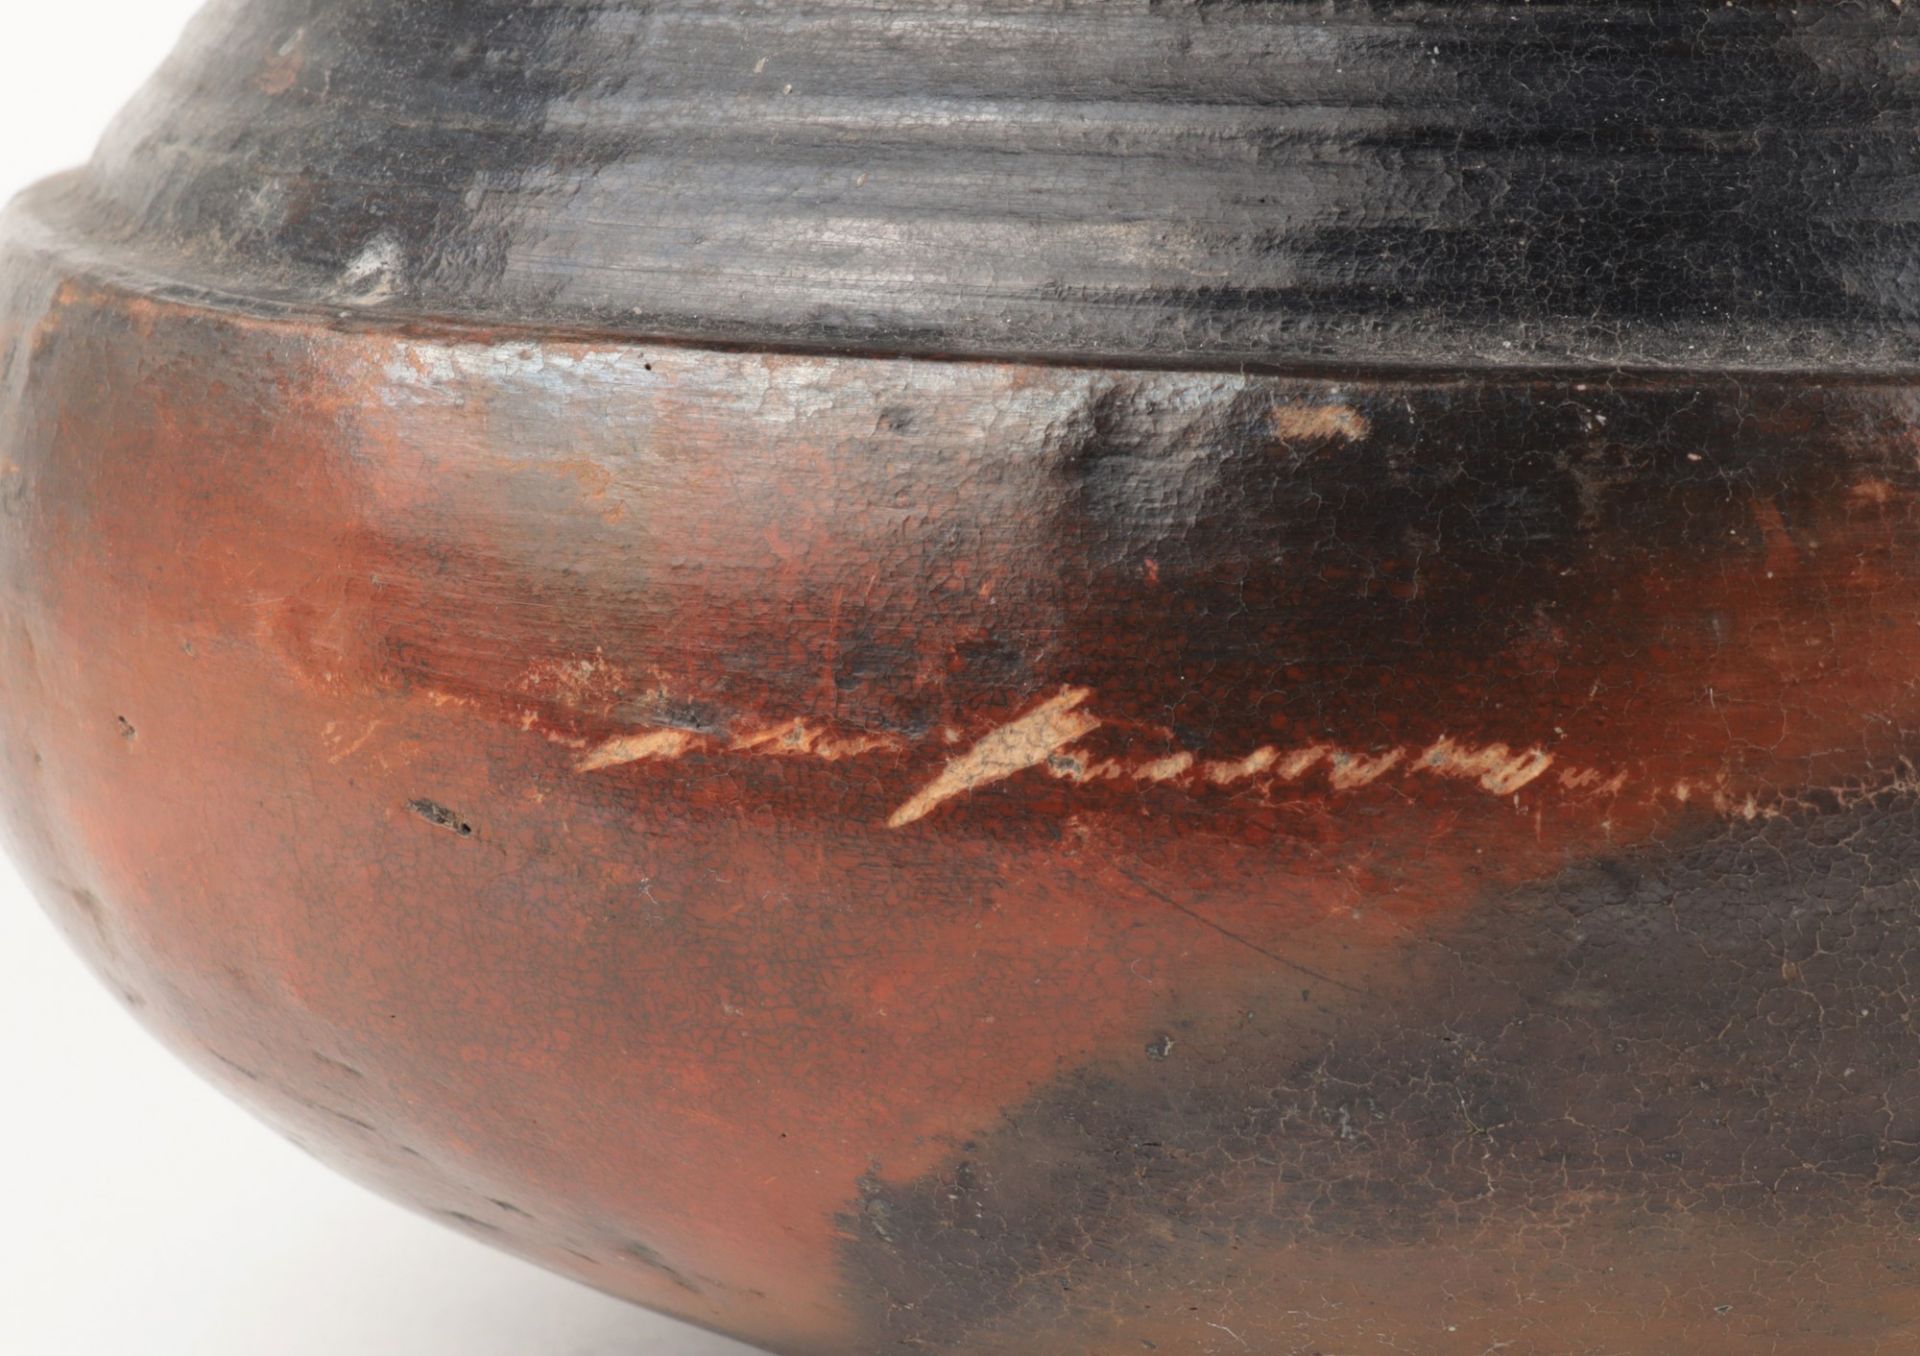 Afrika - Vorratstopf Keramik, rund, halbkugeliger Stand, gedrückte bauchiger Korpus, eingezogener - Bild 3 aus 4